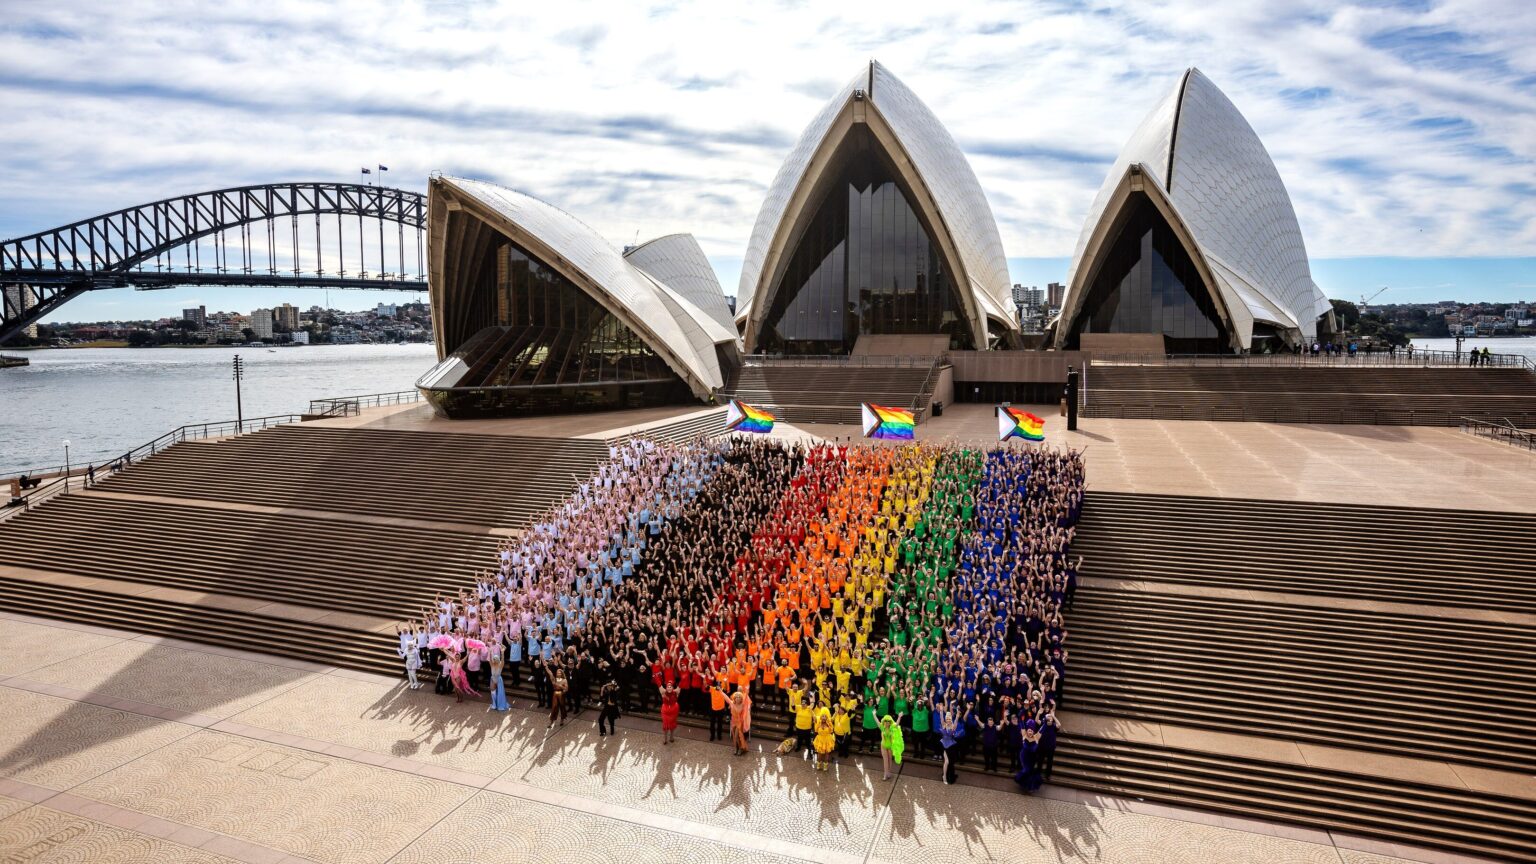 Sydney WorldPride 2023 program revealed! Sydney Gay and Lesbian Mardi